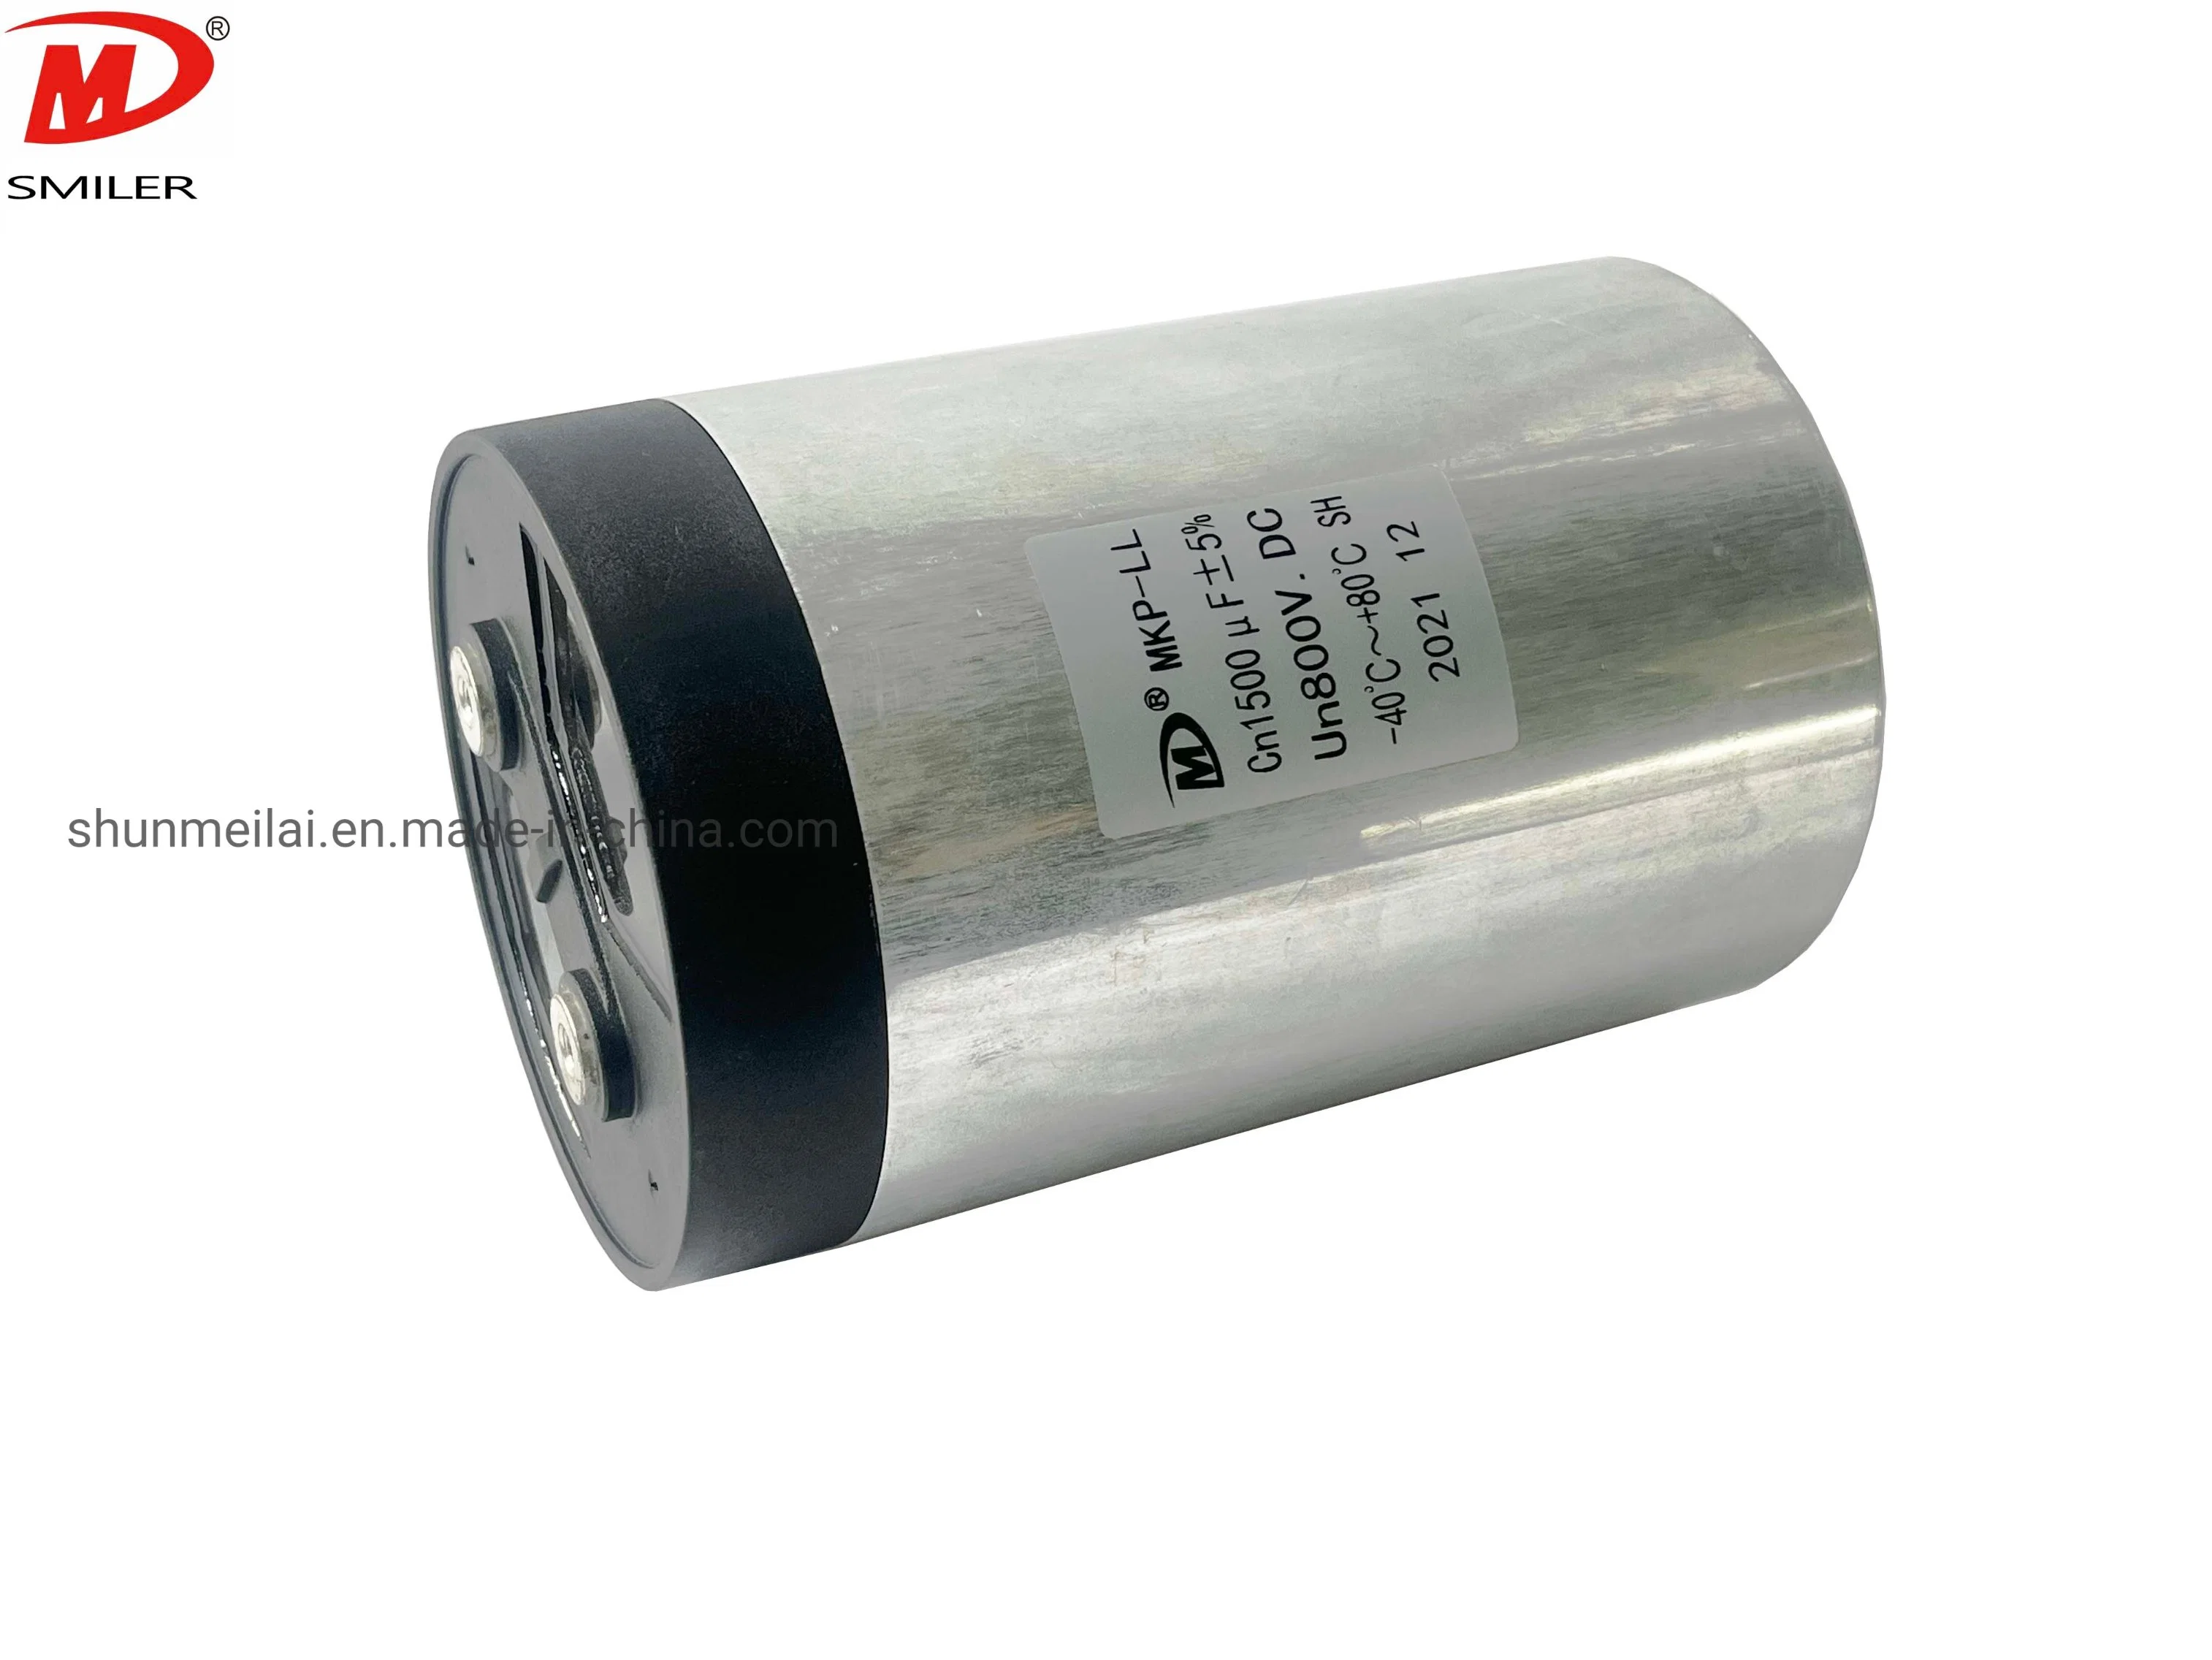 Condensadores de ligação DC Power Capacitor capacitores de alta tensão